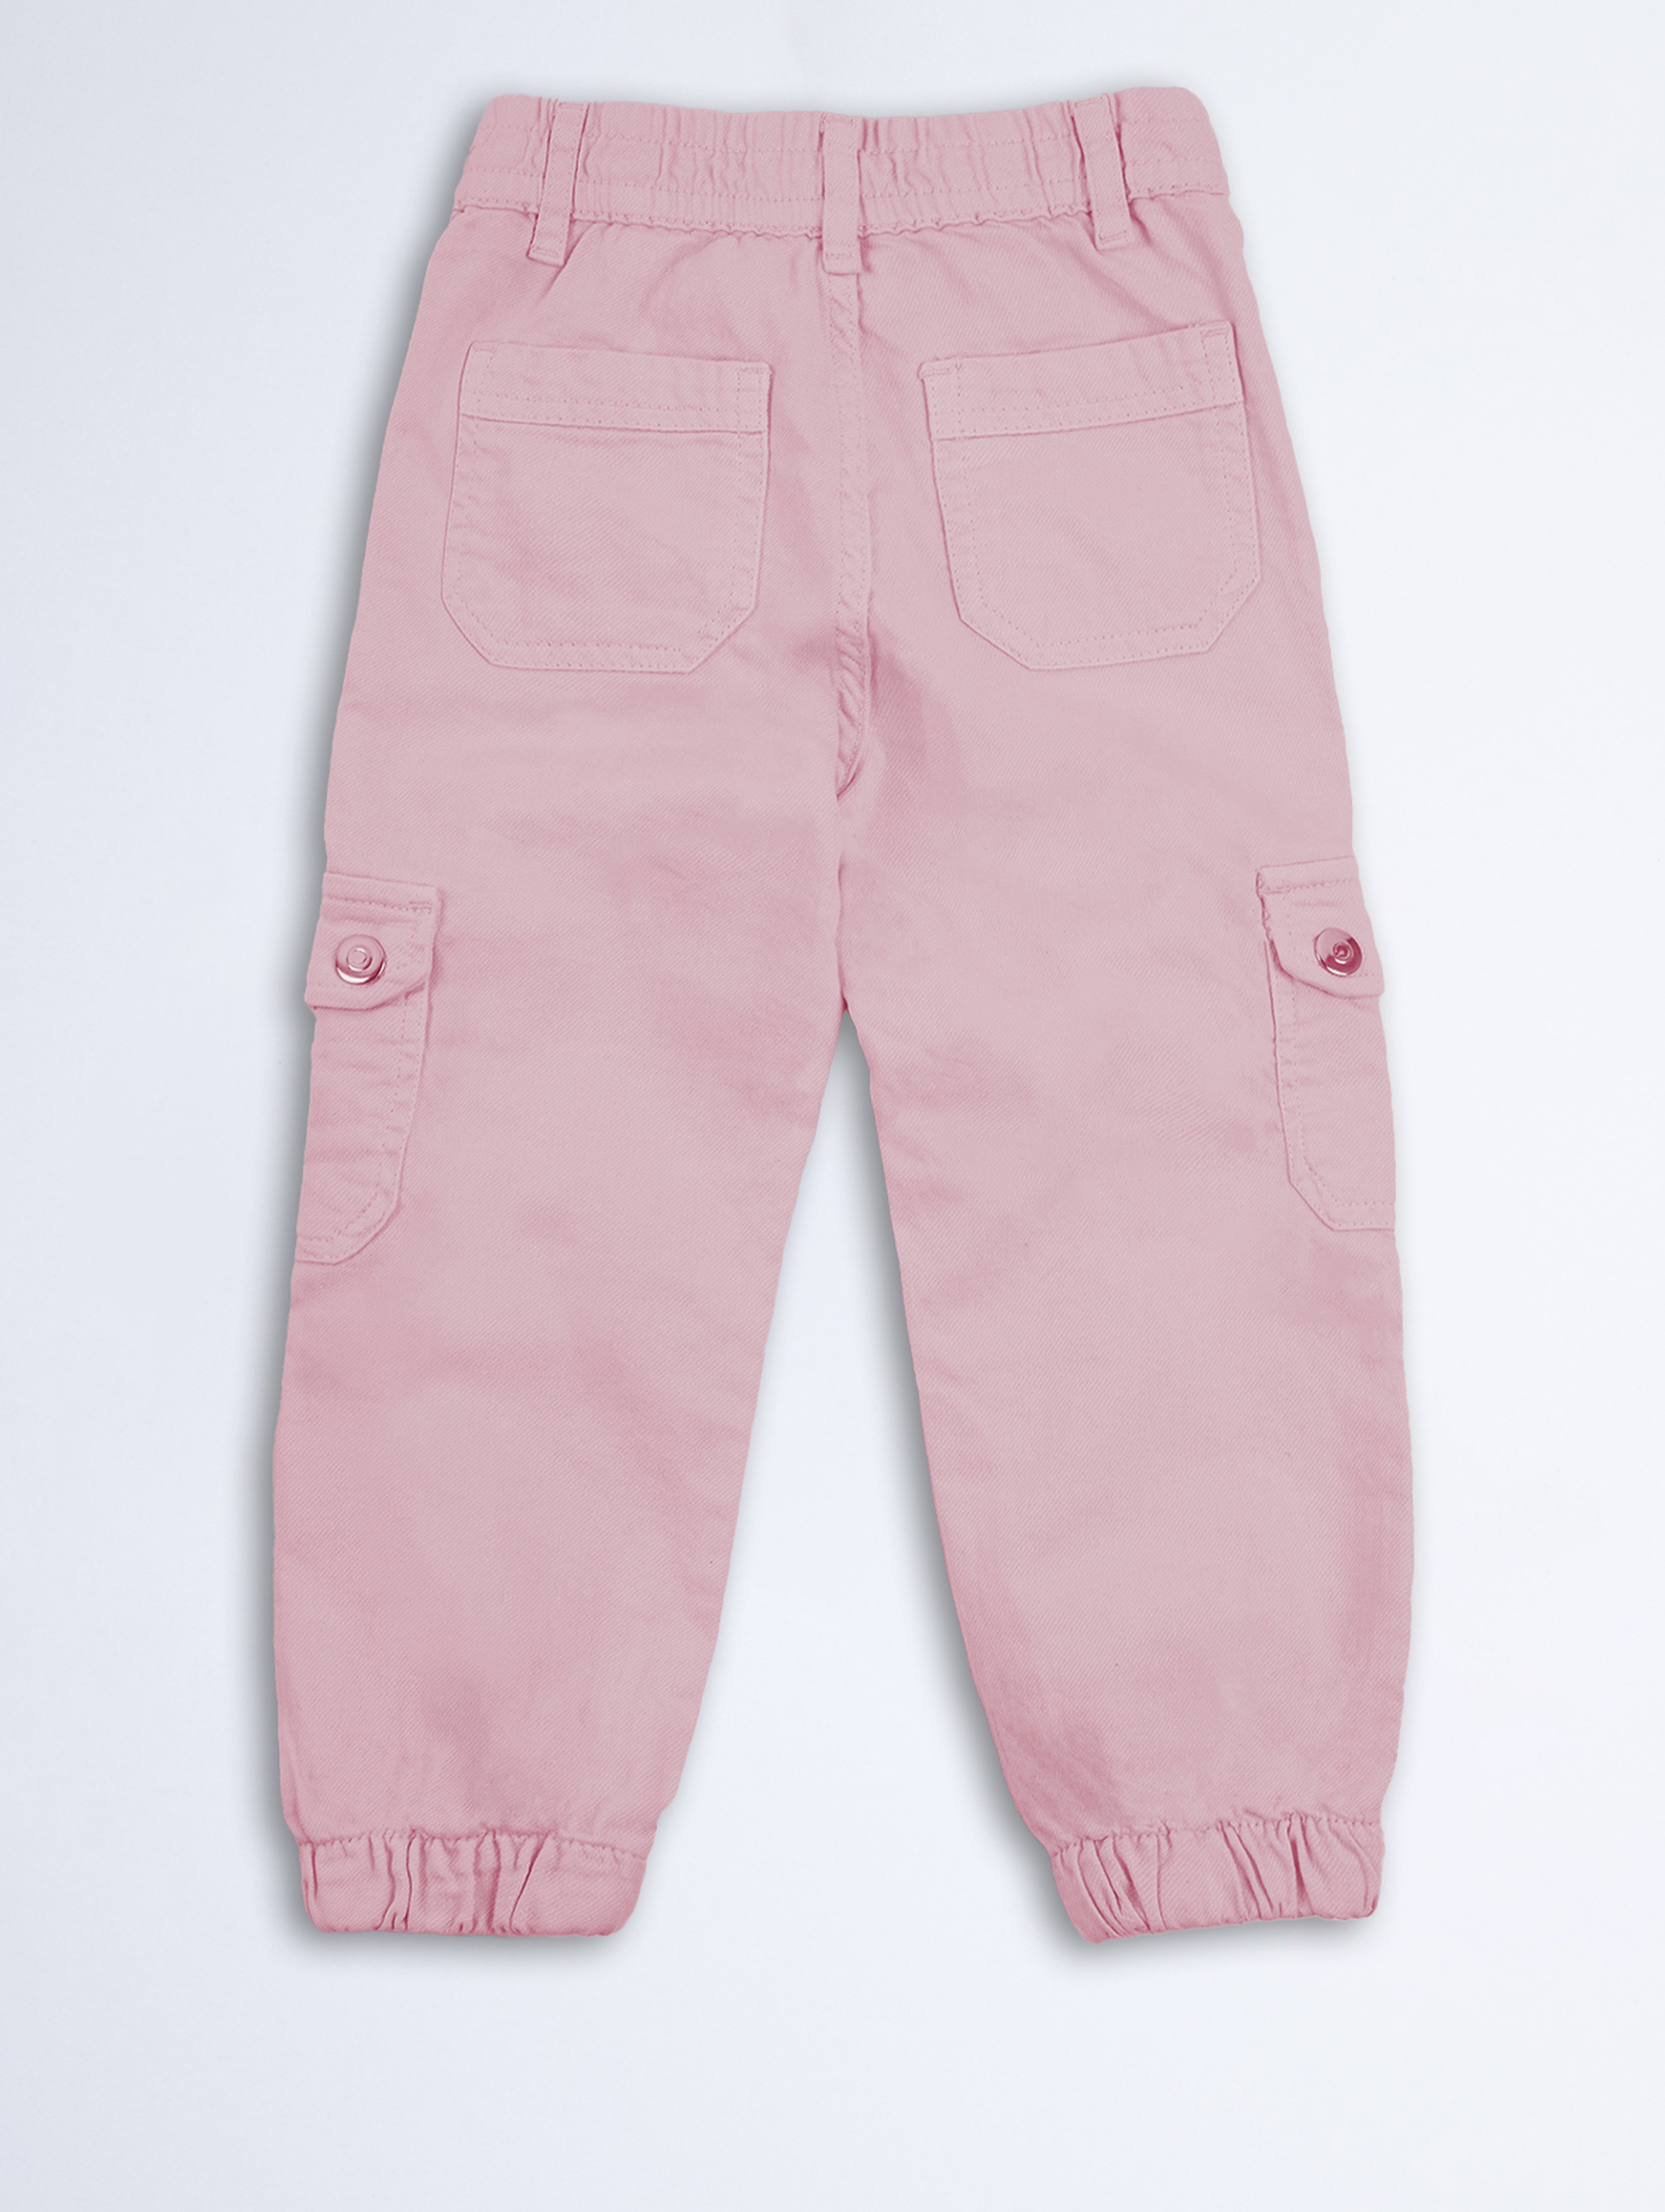 Różowe spodnie bojówki dla dziewczynki - Limited Edition